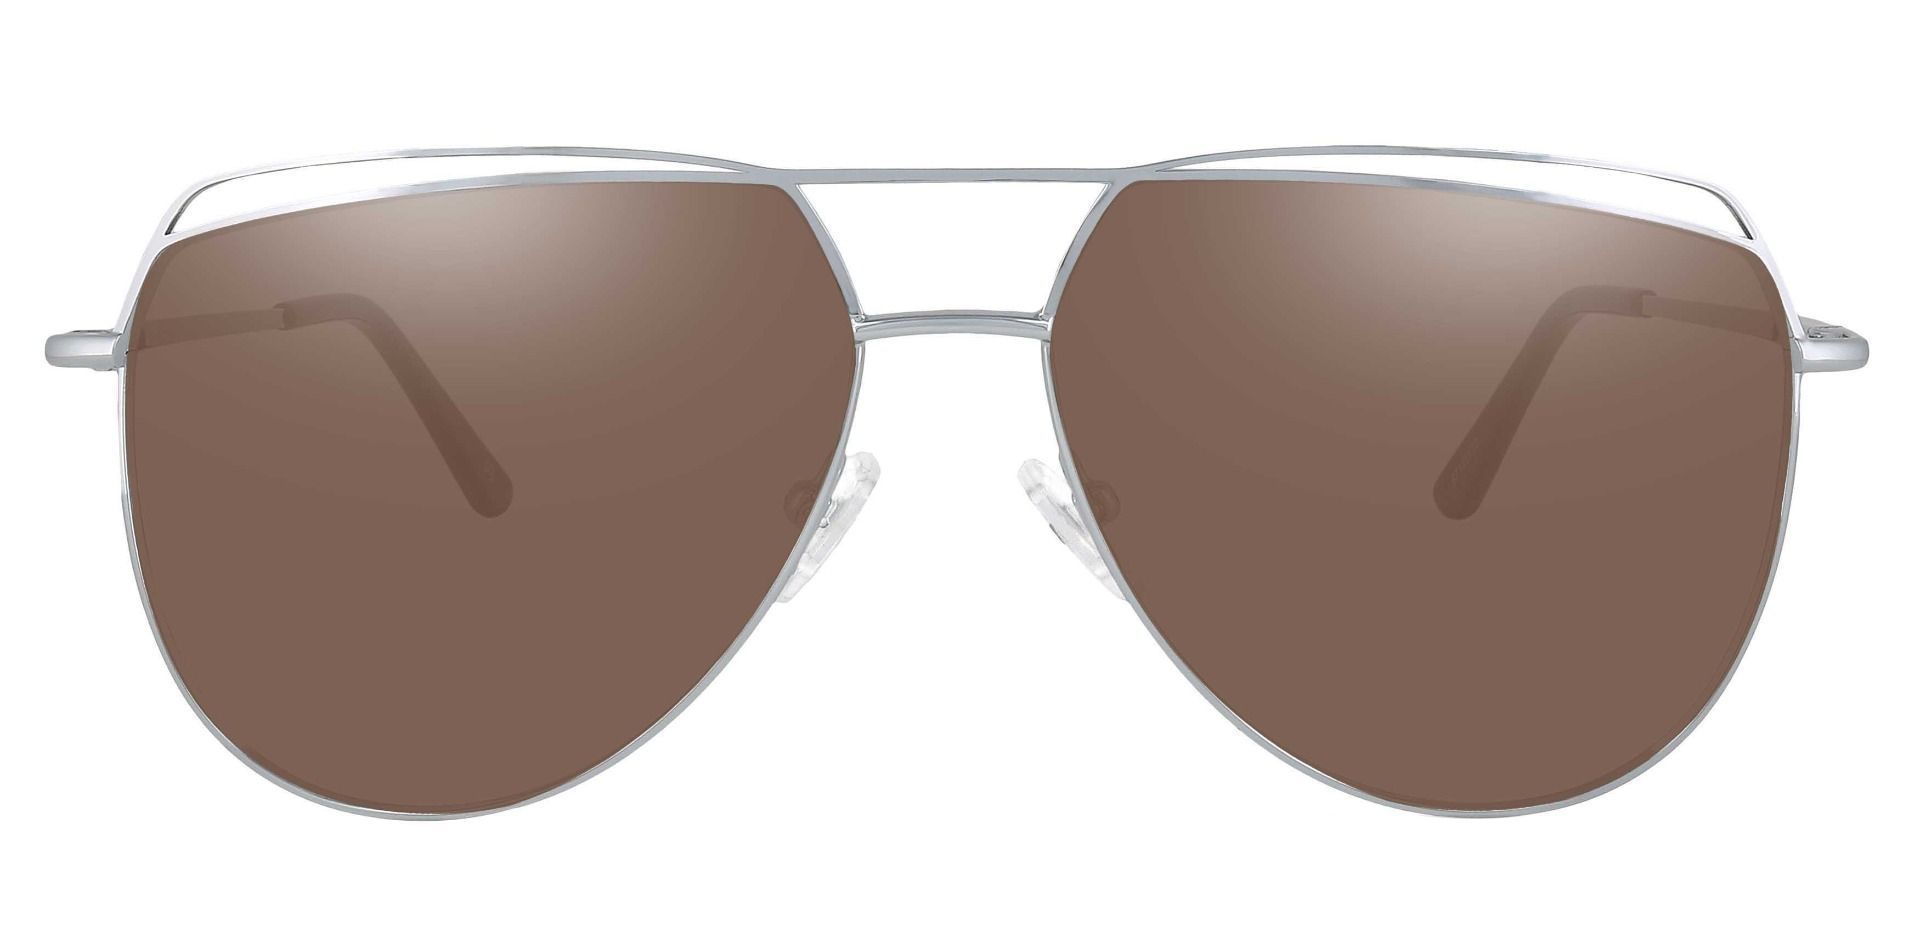 Bruno Aviator Prescription Sunglasses - Rose Gold Frame With Gray ...